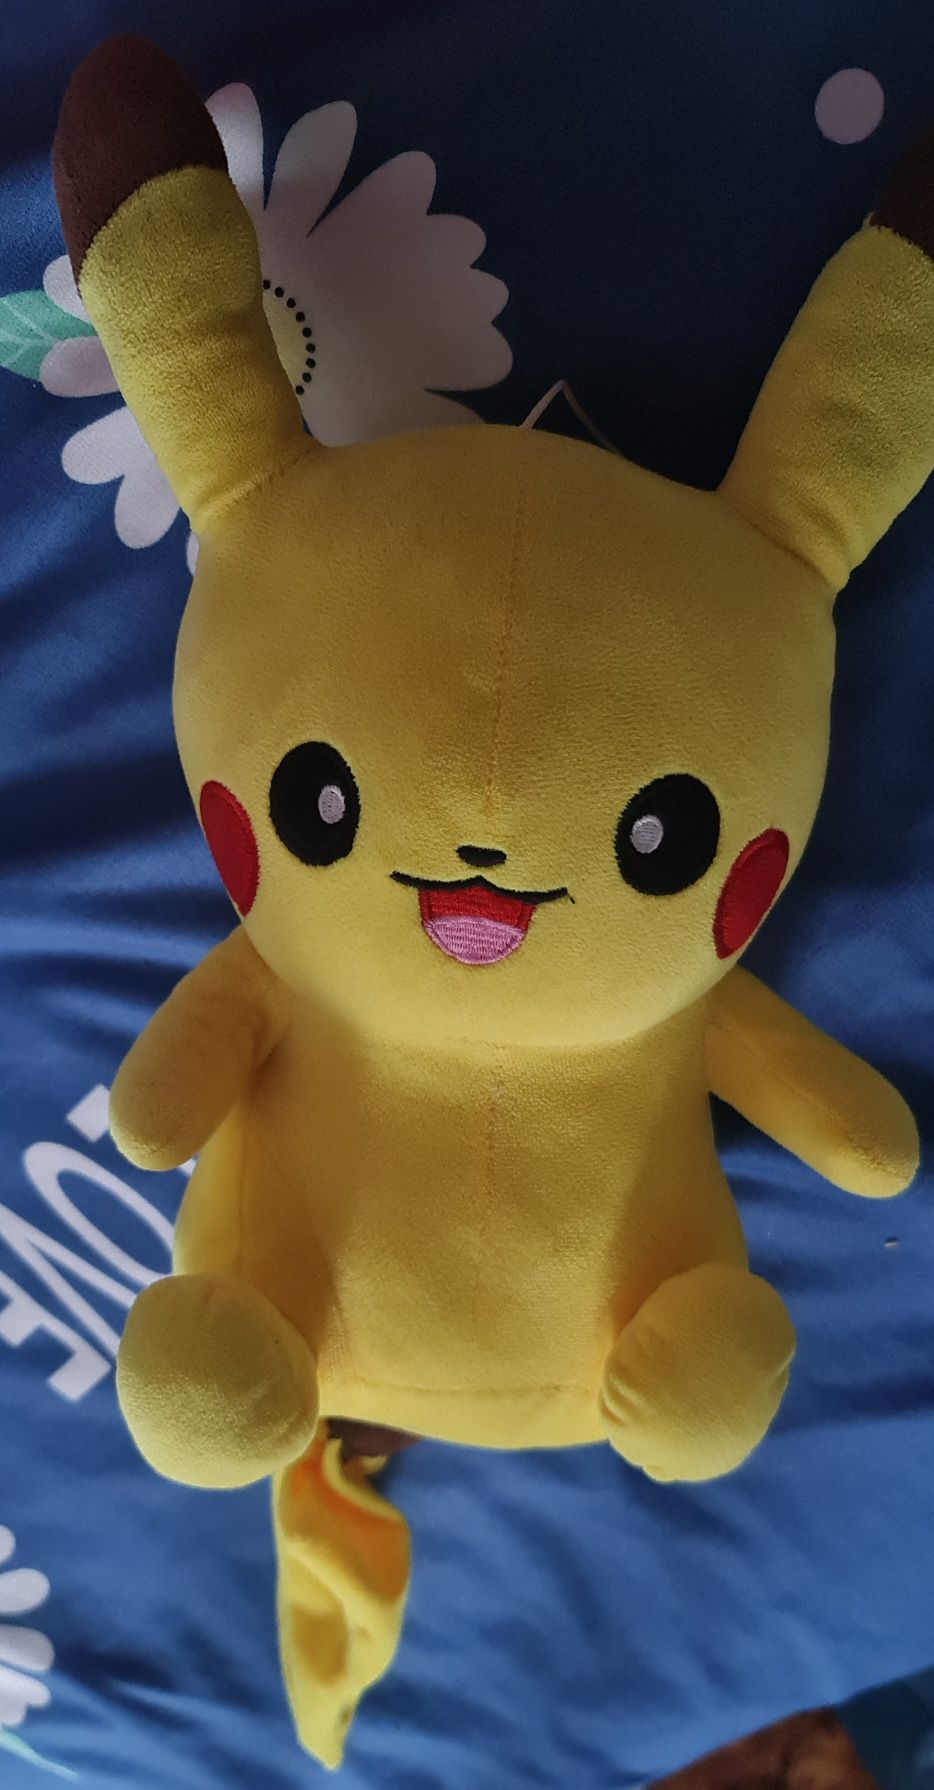 Plus Pokemon Pikachu mare culoare galbenă 35 cm.